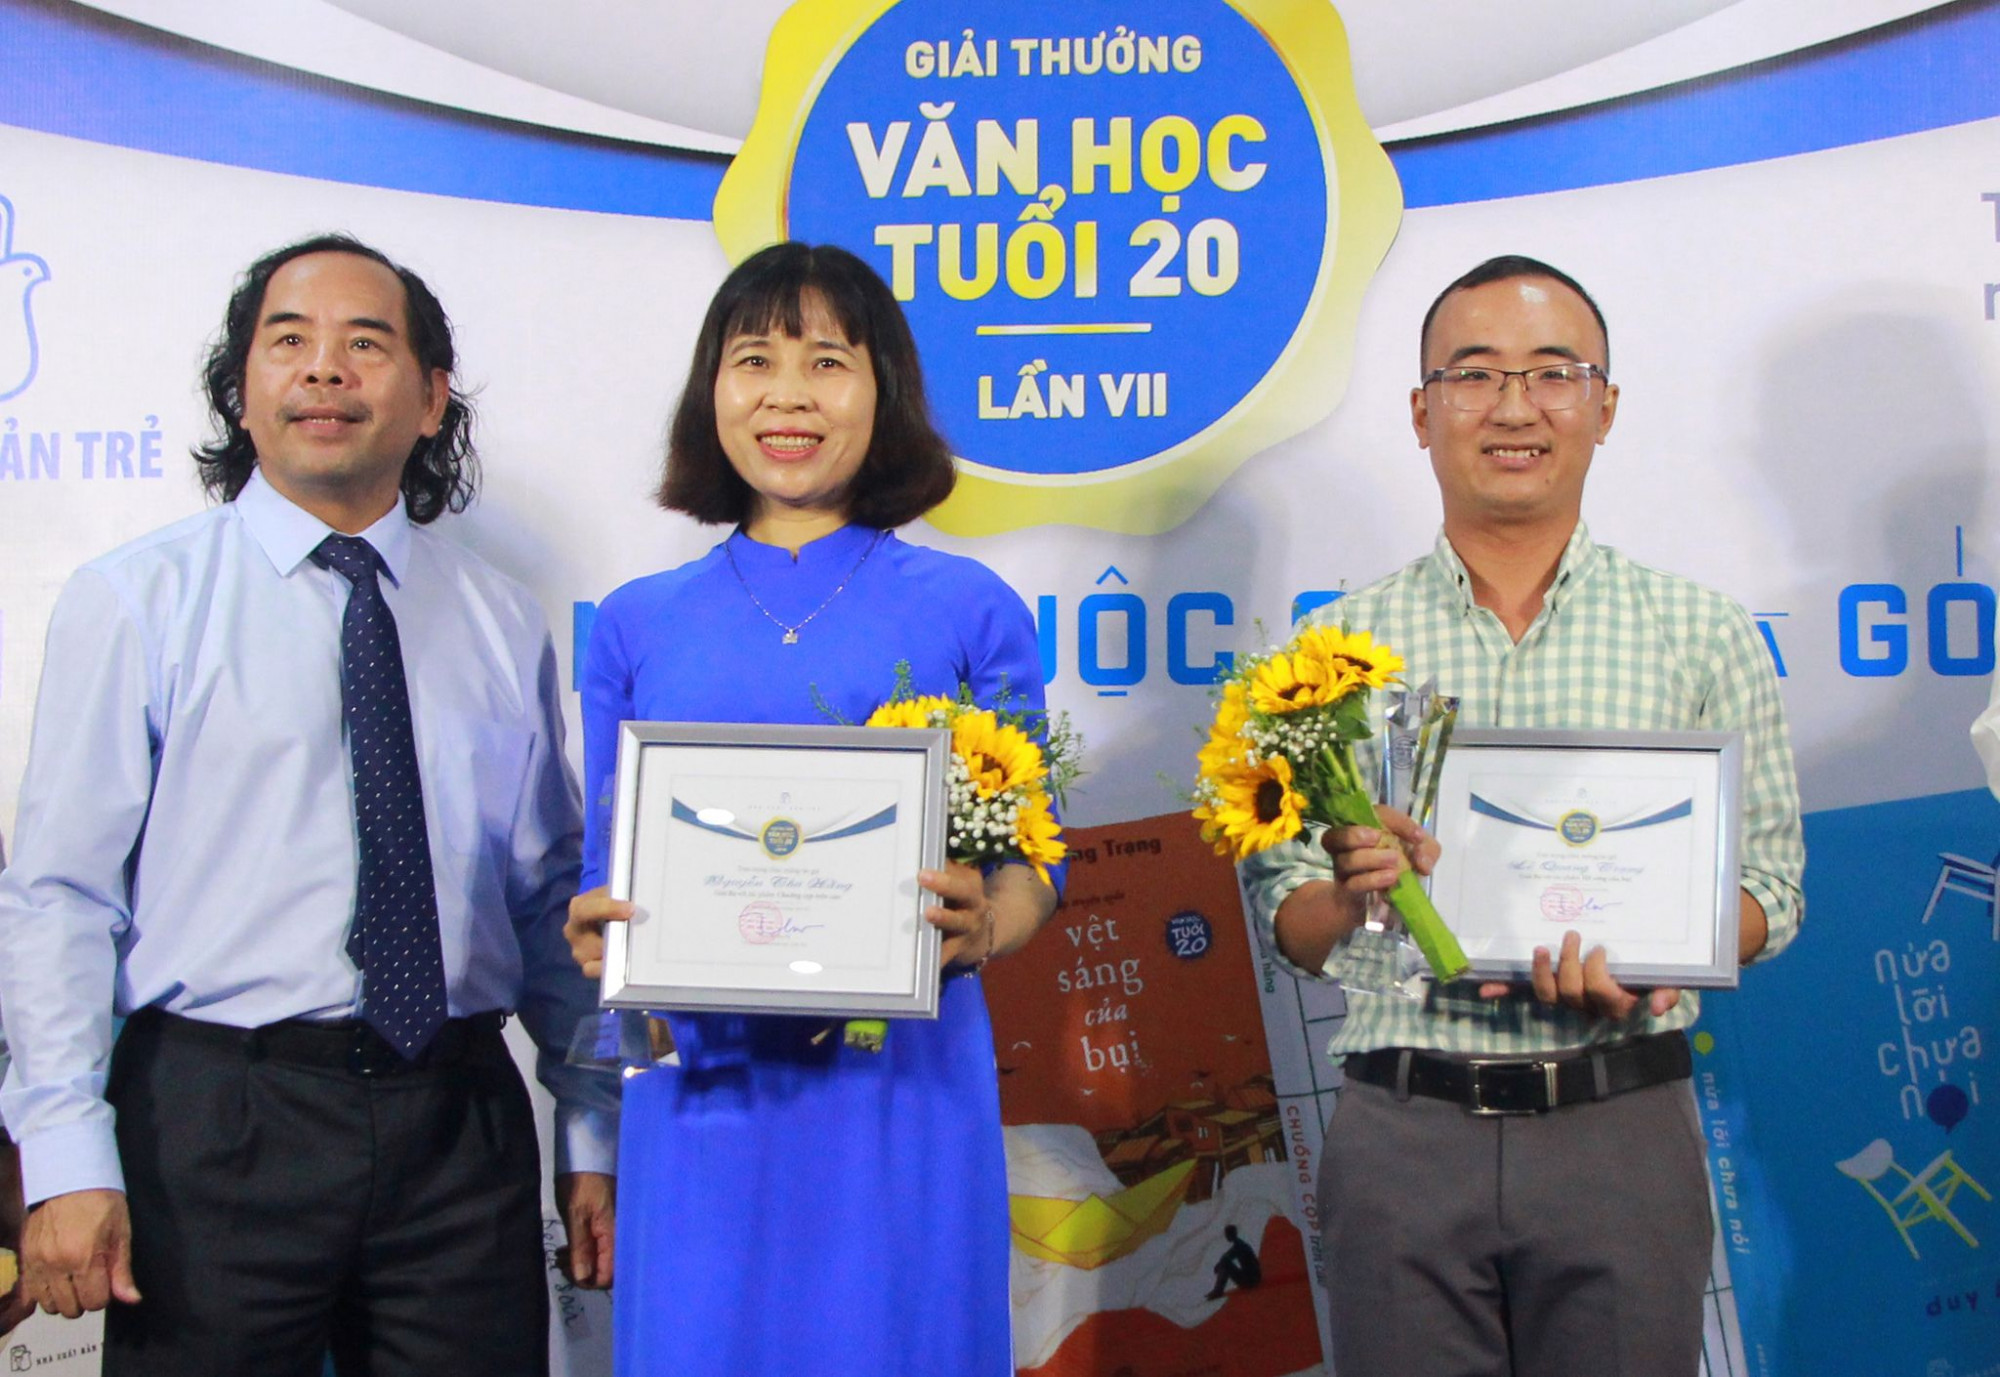 Nhà văn Lê Quang Trạng nhận giải Ba, giải thưởng Văn học Tuổi 20 lần VII. 